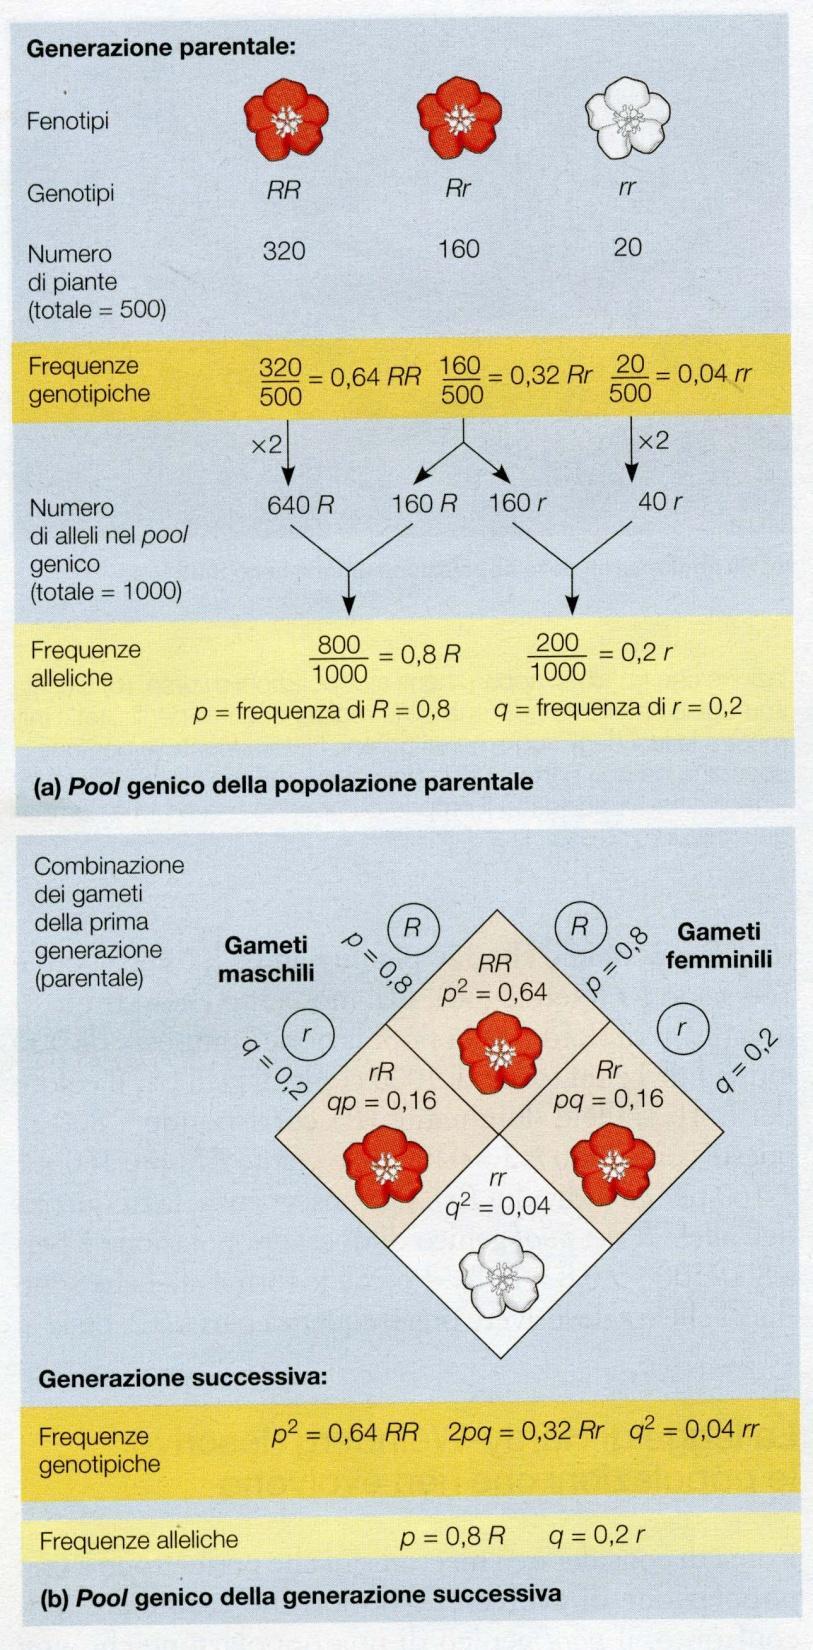 La legge di Hardy-Weinberg descrive le popolazioni che non evolvono La legge afferma che le frequenze degli alleli del pool genico di una popolazione rimangono costanti nel tempo fino a quando non vi